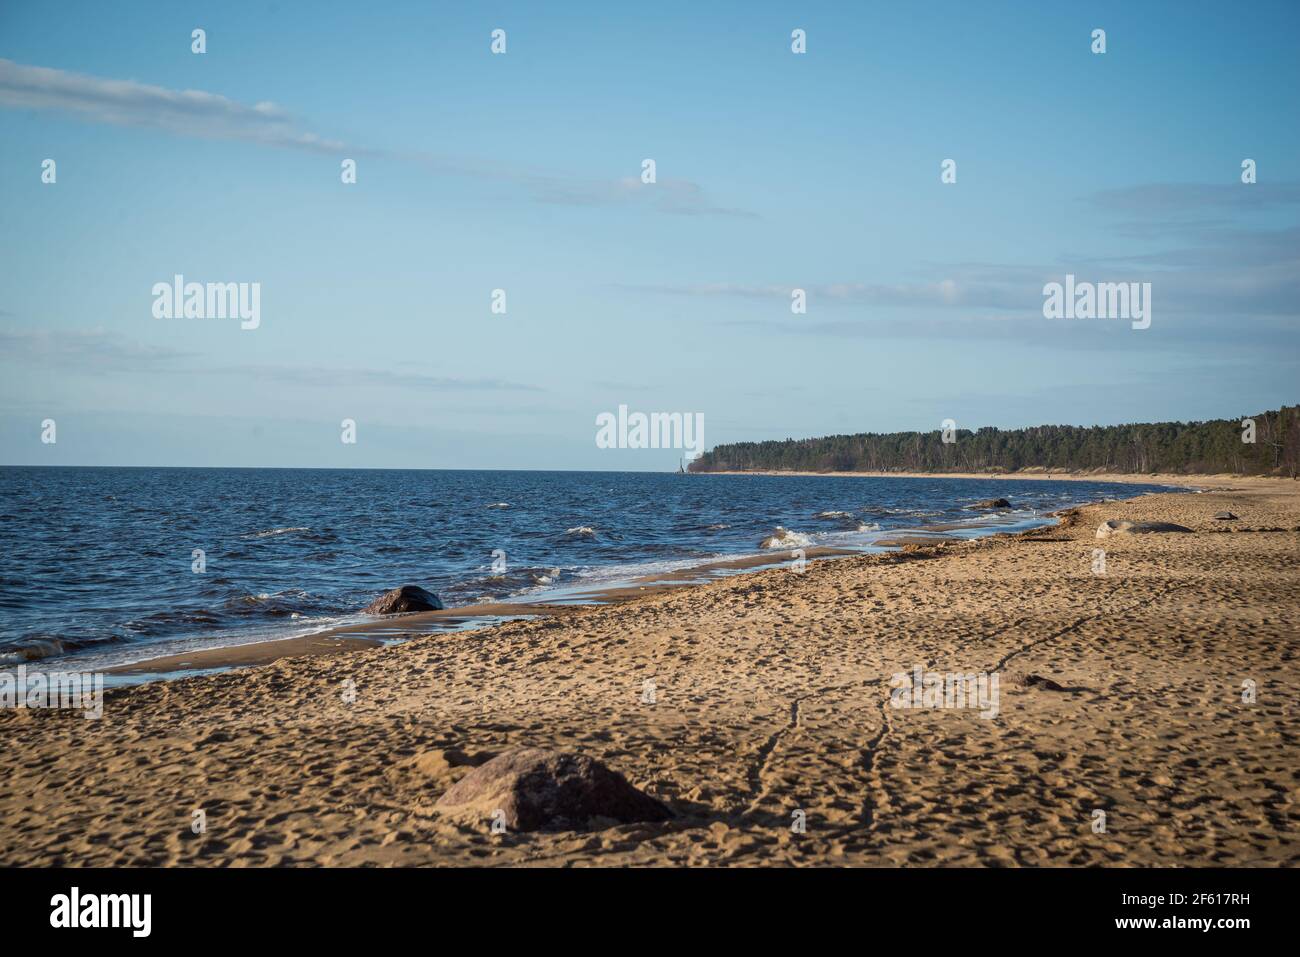 Bellissima vista mare spiaggia con cielo blu, sabbia marrone duna con impronte umane. La costa è bagnata da splendide onde di mare. Paesaggio primaverile. Foto Stock